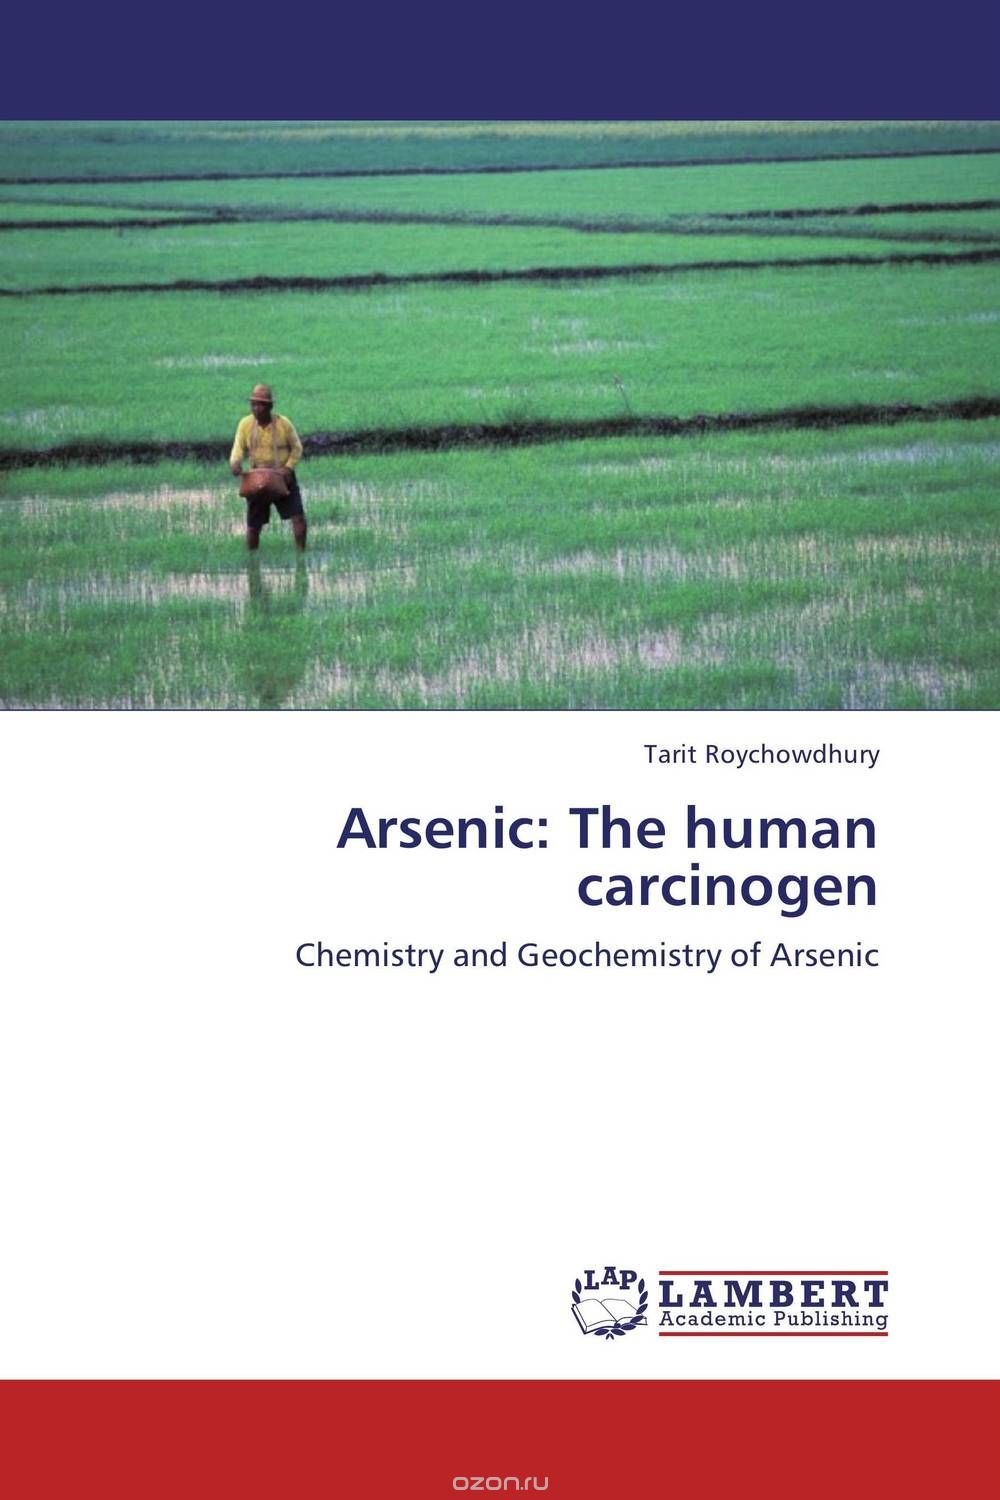 Скачать книгу "Arsenic: The human carcinogen"